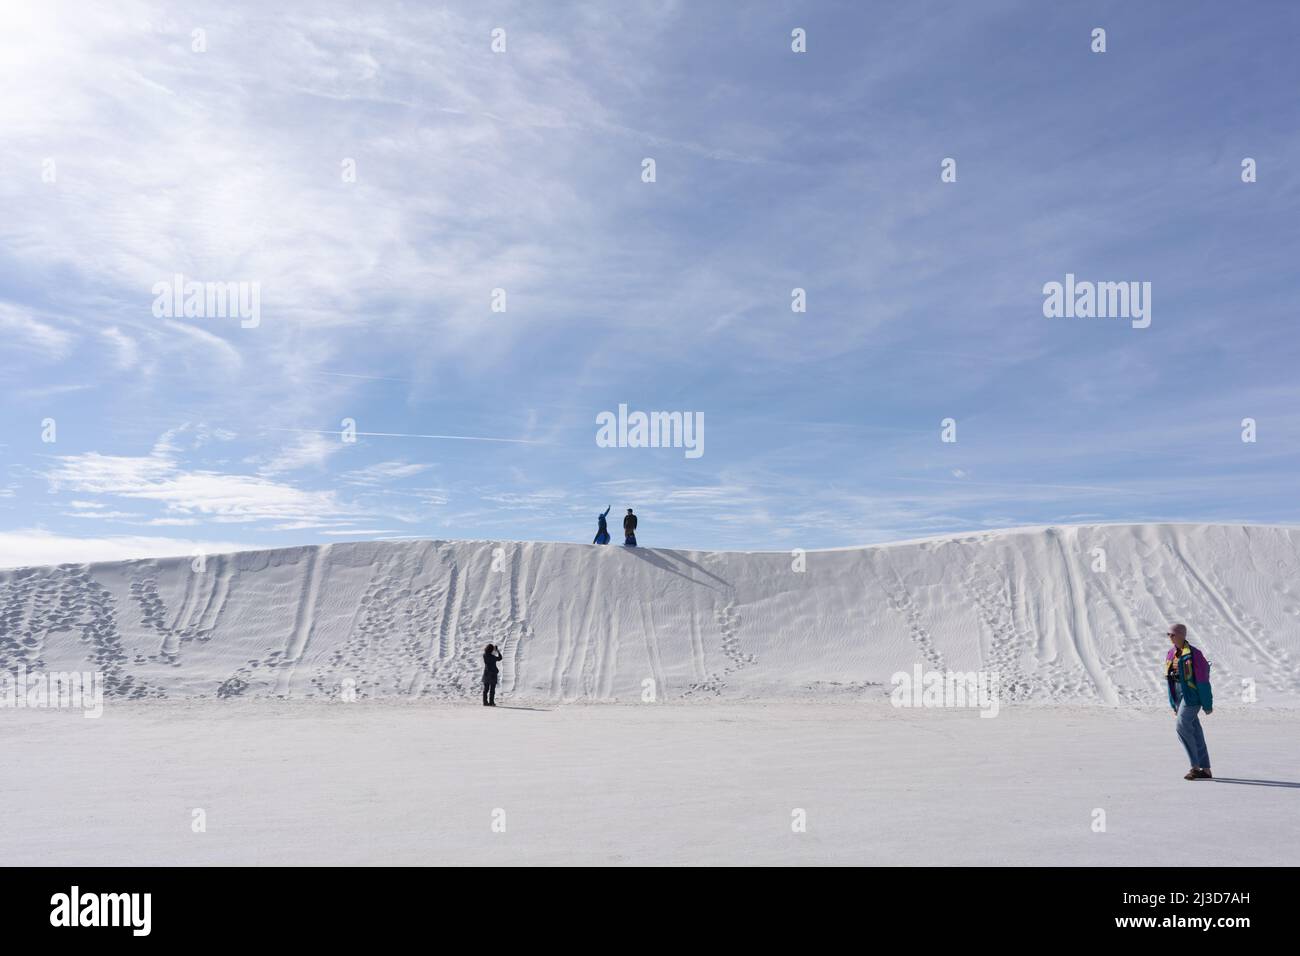 Les gens descendent sur des soucoupes dans les grandes dunes blanches en gypse dans le parc national de White Sands au Nouveau-Mexique lors d'une journée ensoleillée contre un grand ciel bleu. Banque D'Images